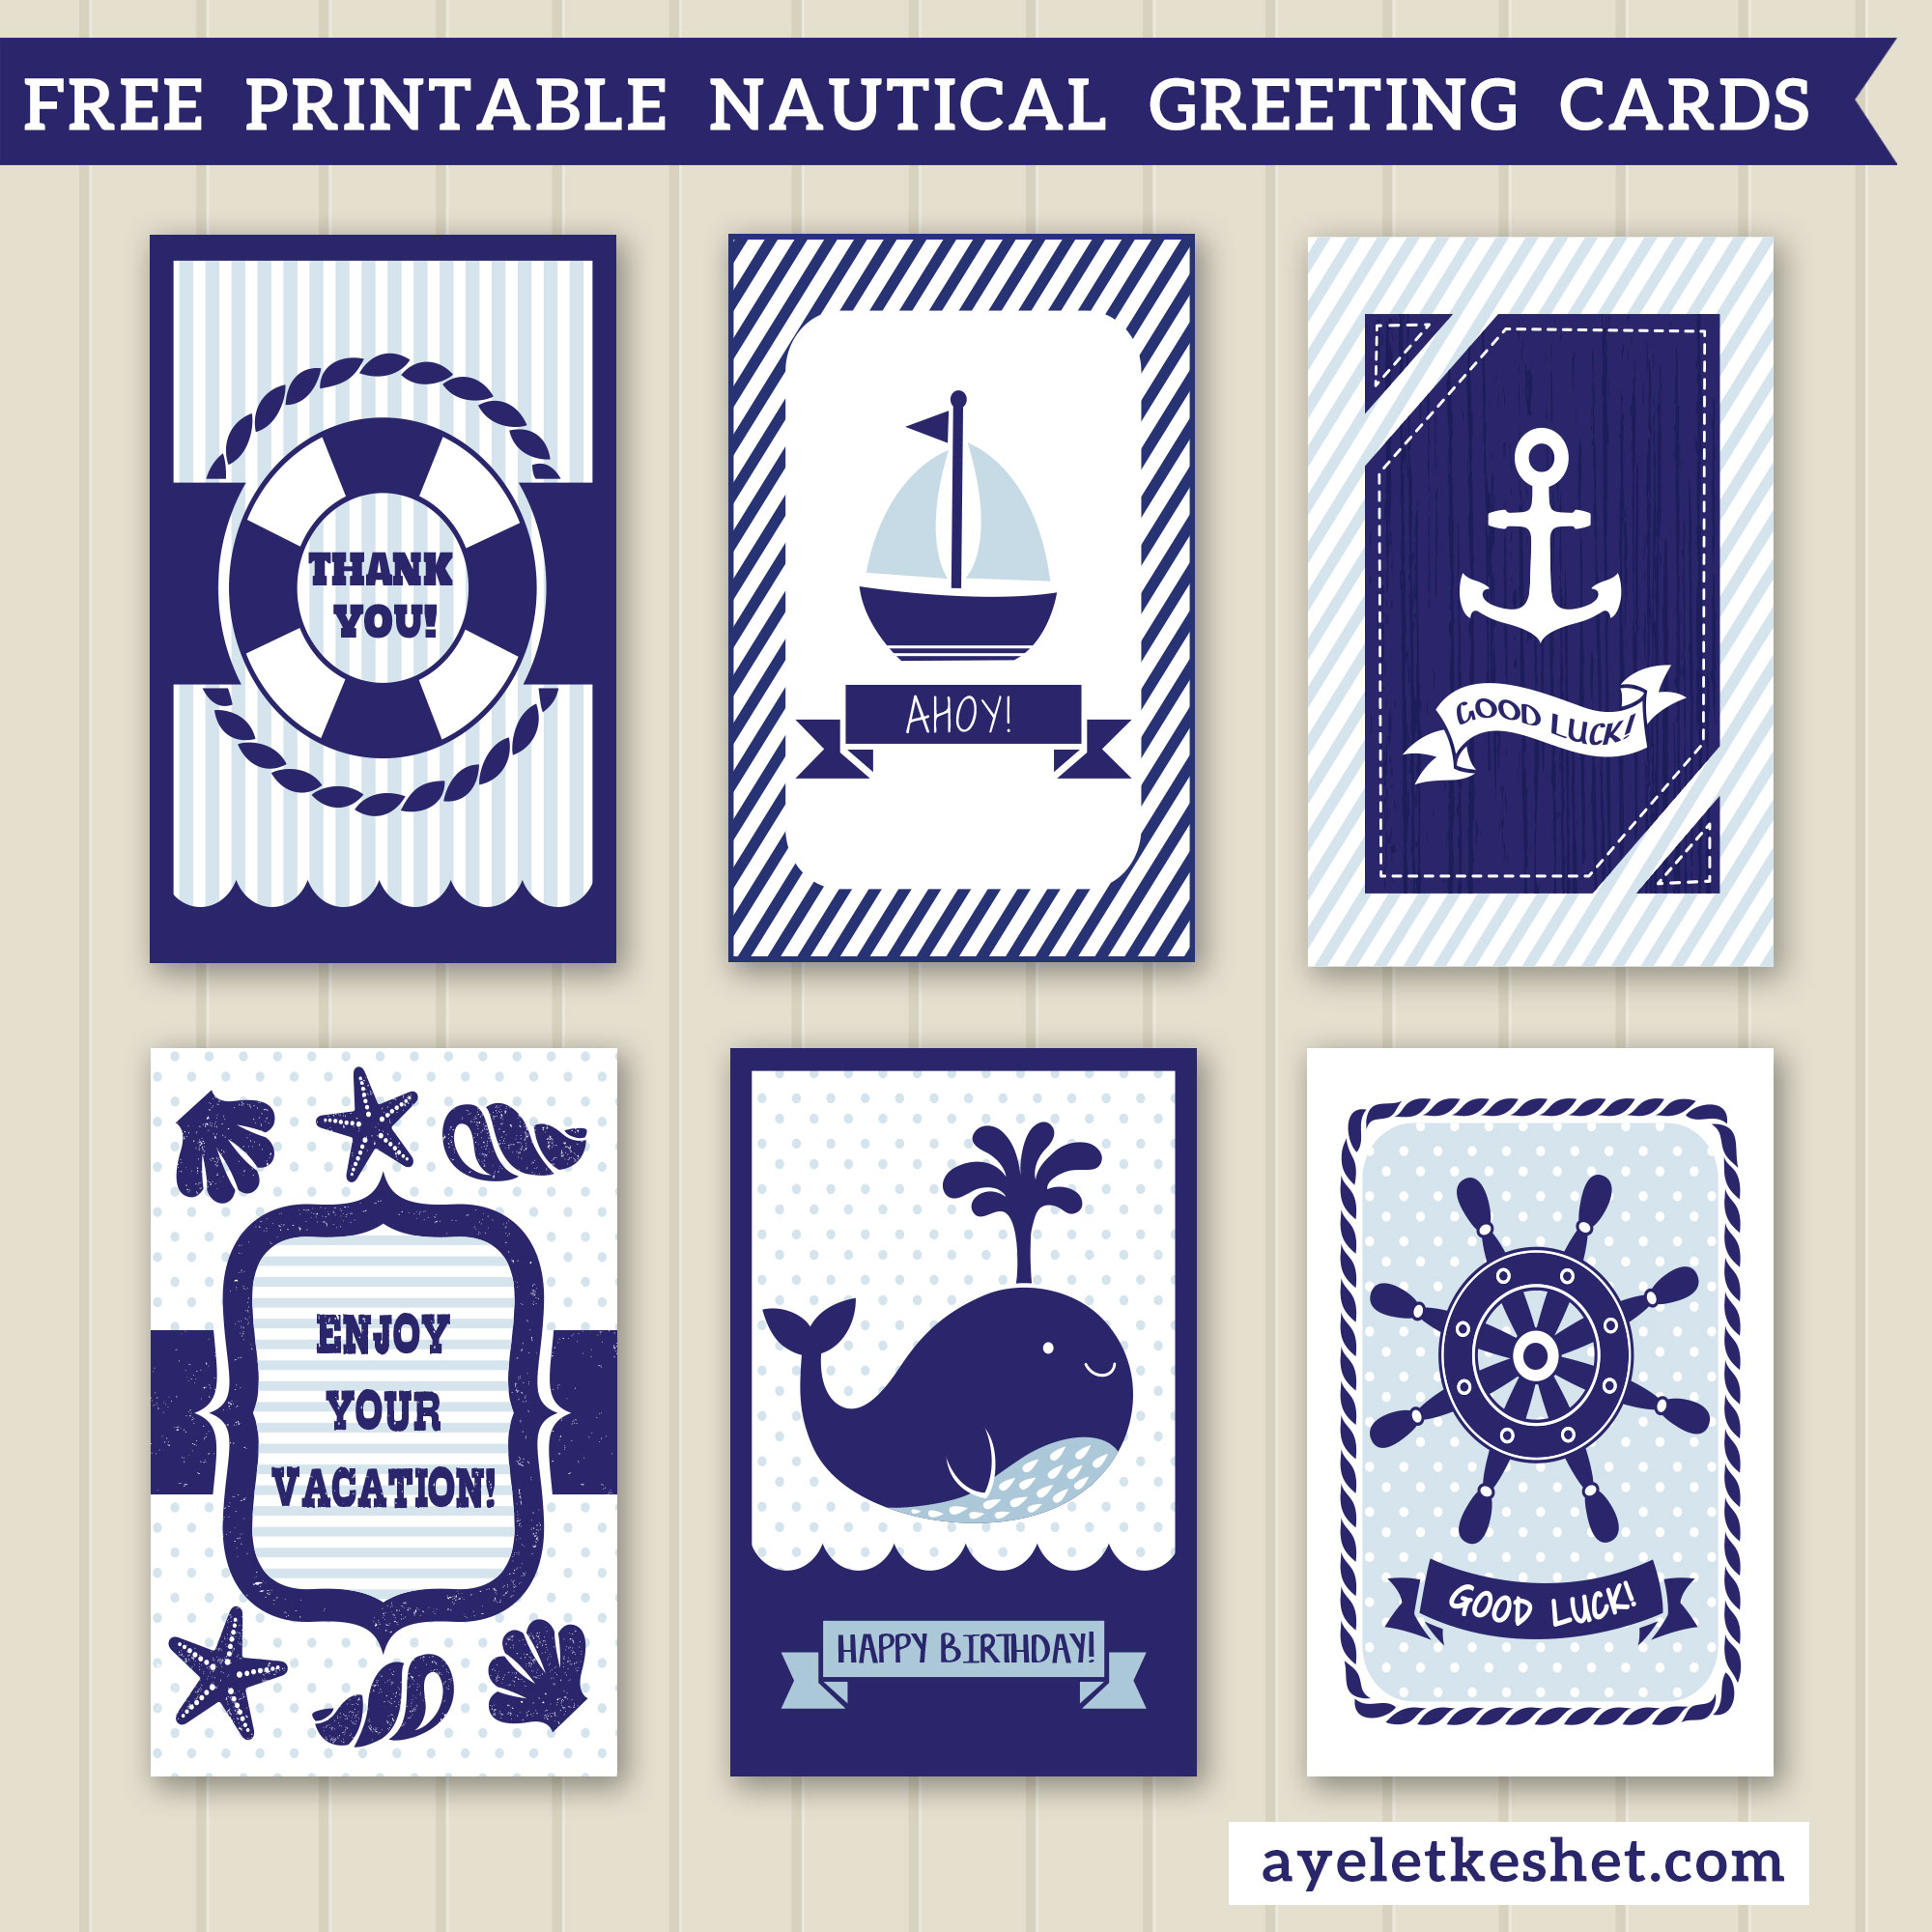 Free Printable Nautical Birthday Cards